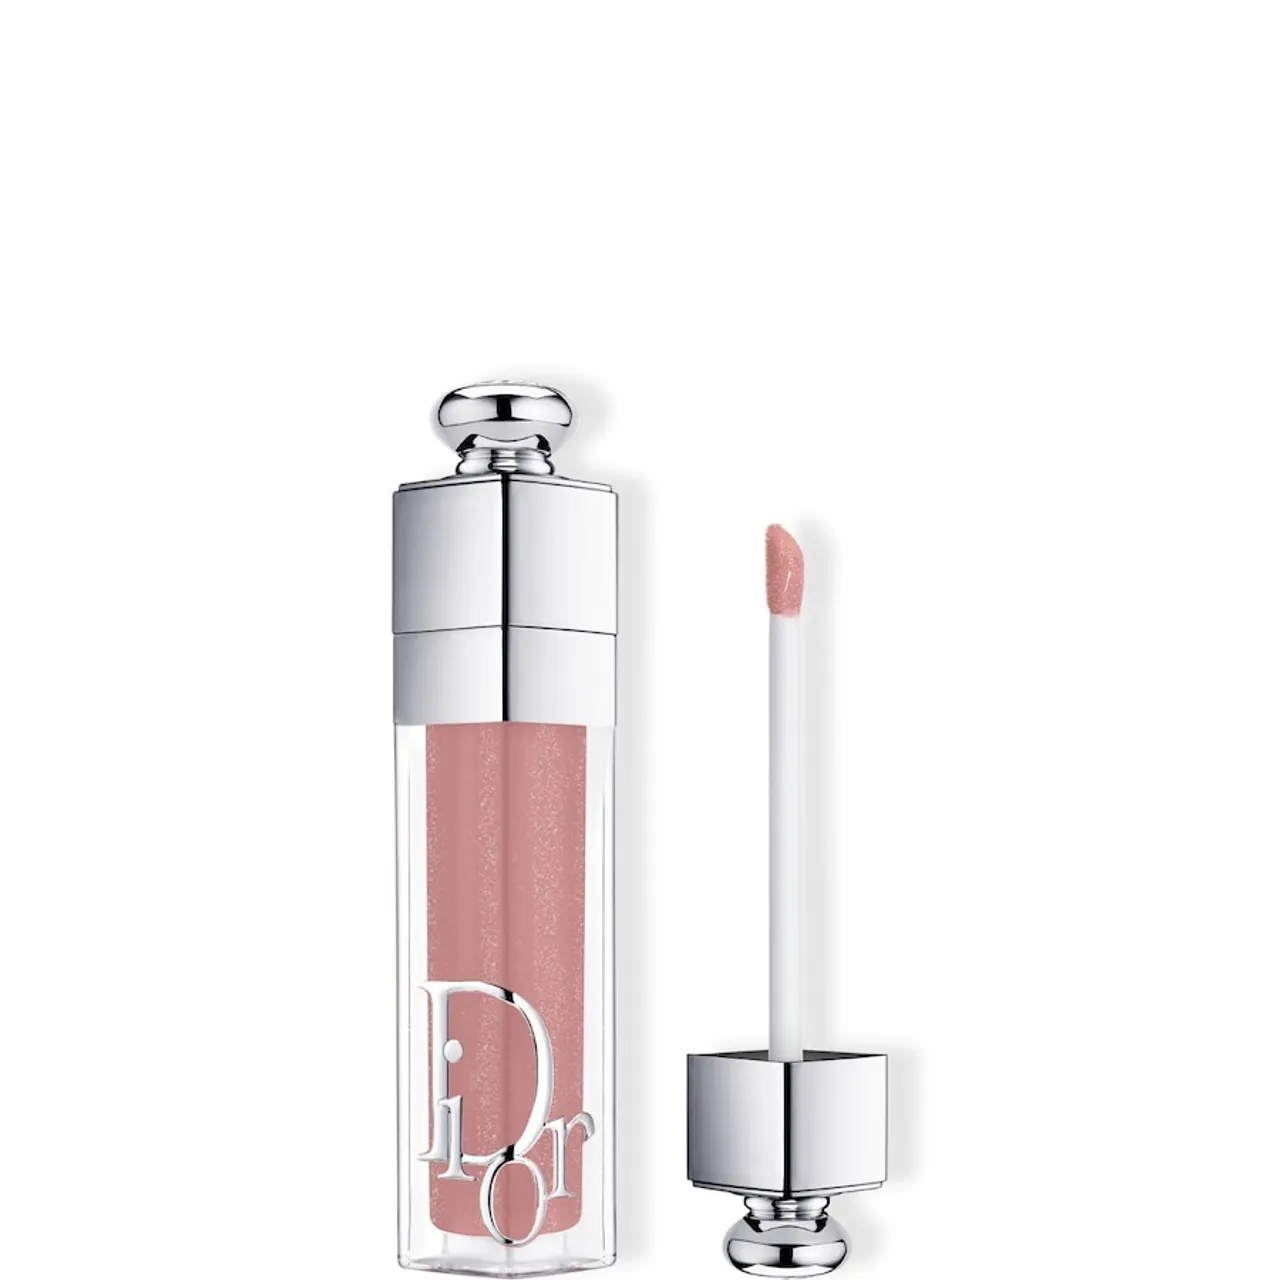 DIOR - Dior Addict Lip Maximizer Aufpolsternder Lipgloss – Feuchtigkeitspflege und Volumeneffekt – Sofort und langanhaltend 6 ml 013 - BEIGE